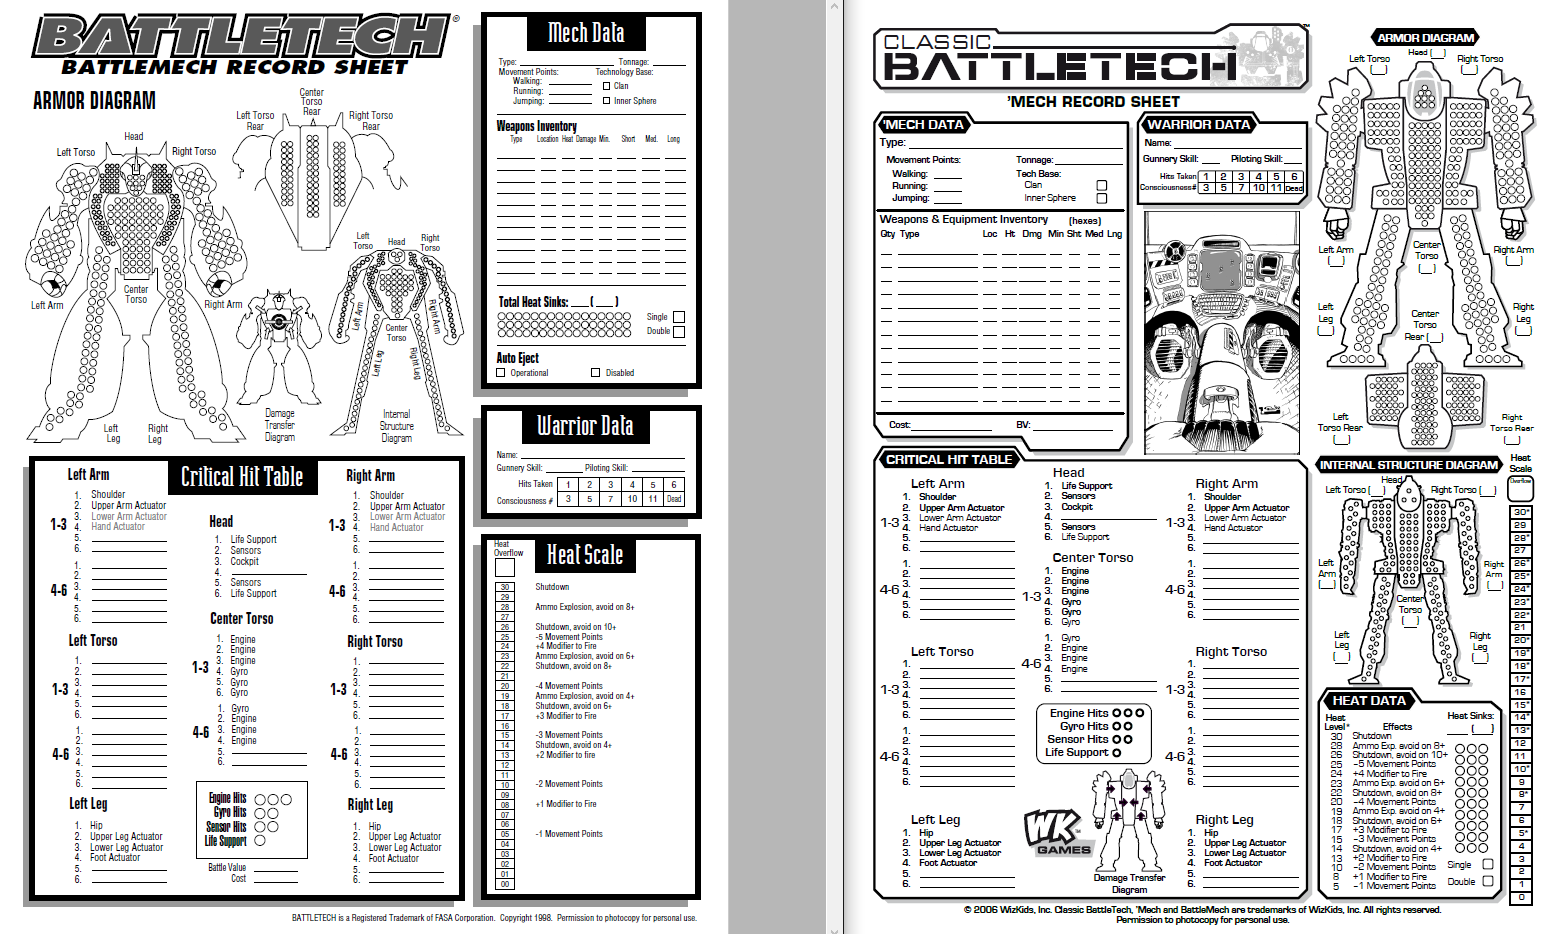 battletech record sheets volume 1 pdf